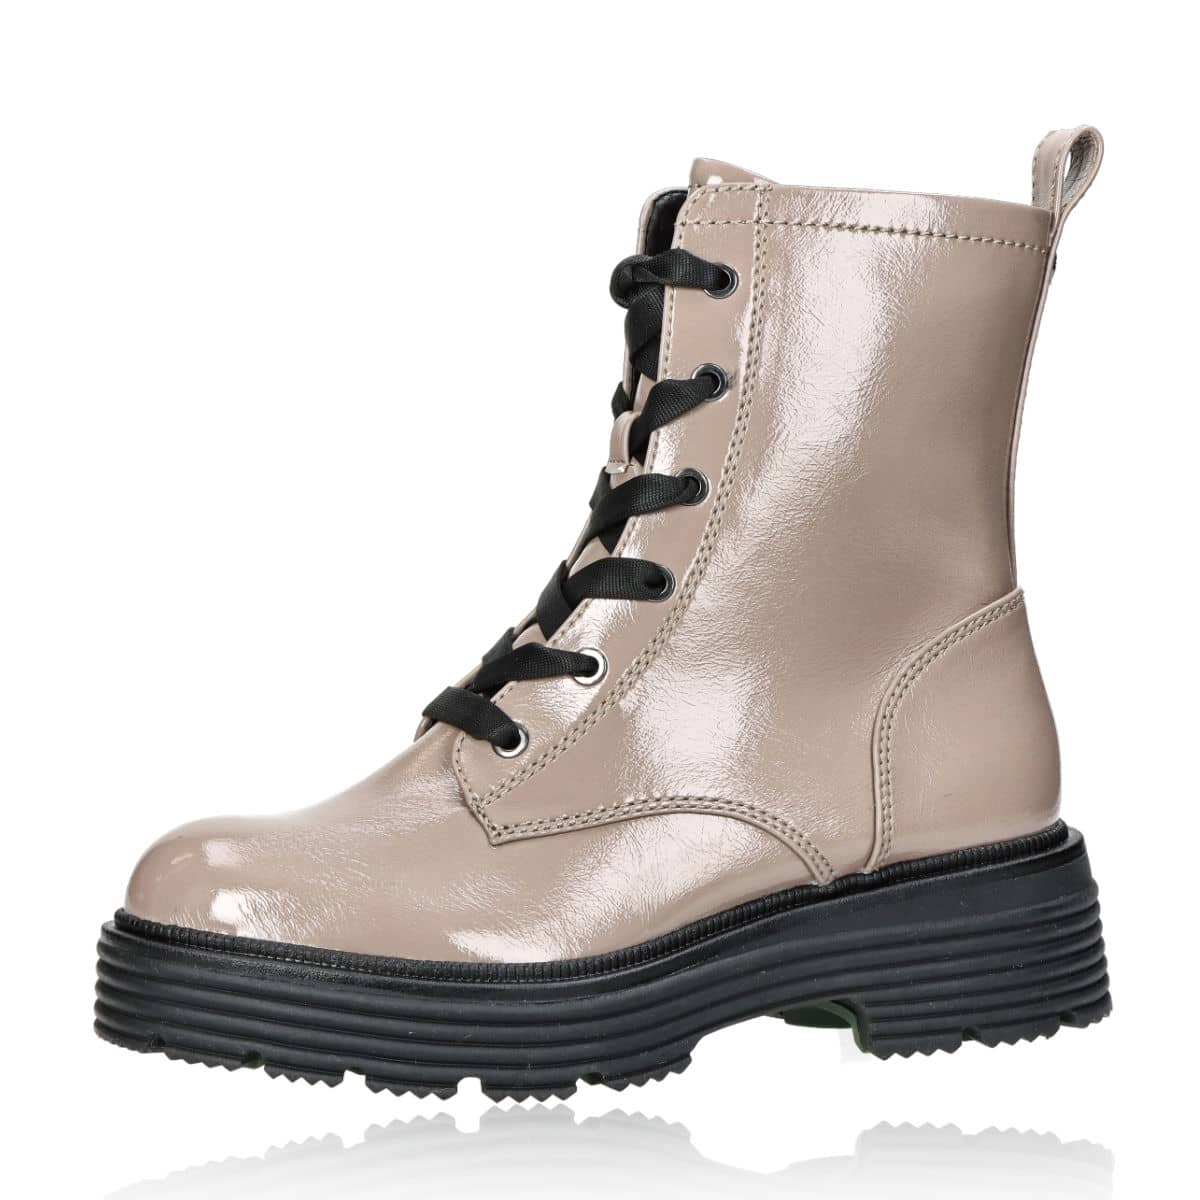 Verwaand Landelijk Af en toe Tamaris women's fashionable zipped ankle boots - beige/brown | Robel.shoes